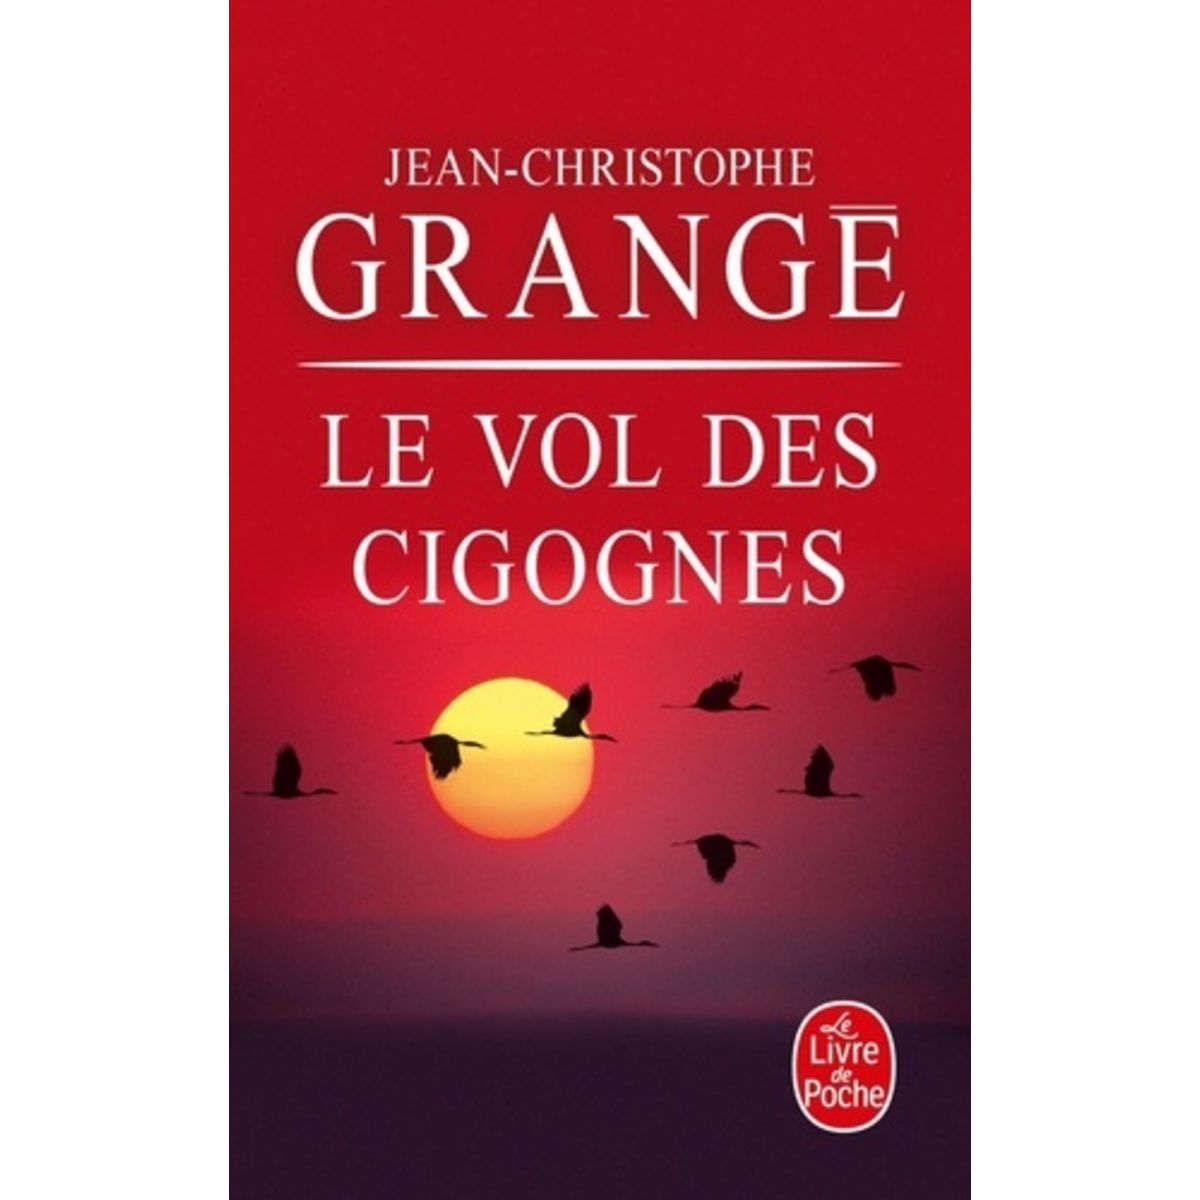  LE VOL DES CIGOGNES, Grangé Jean-Christophe